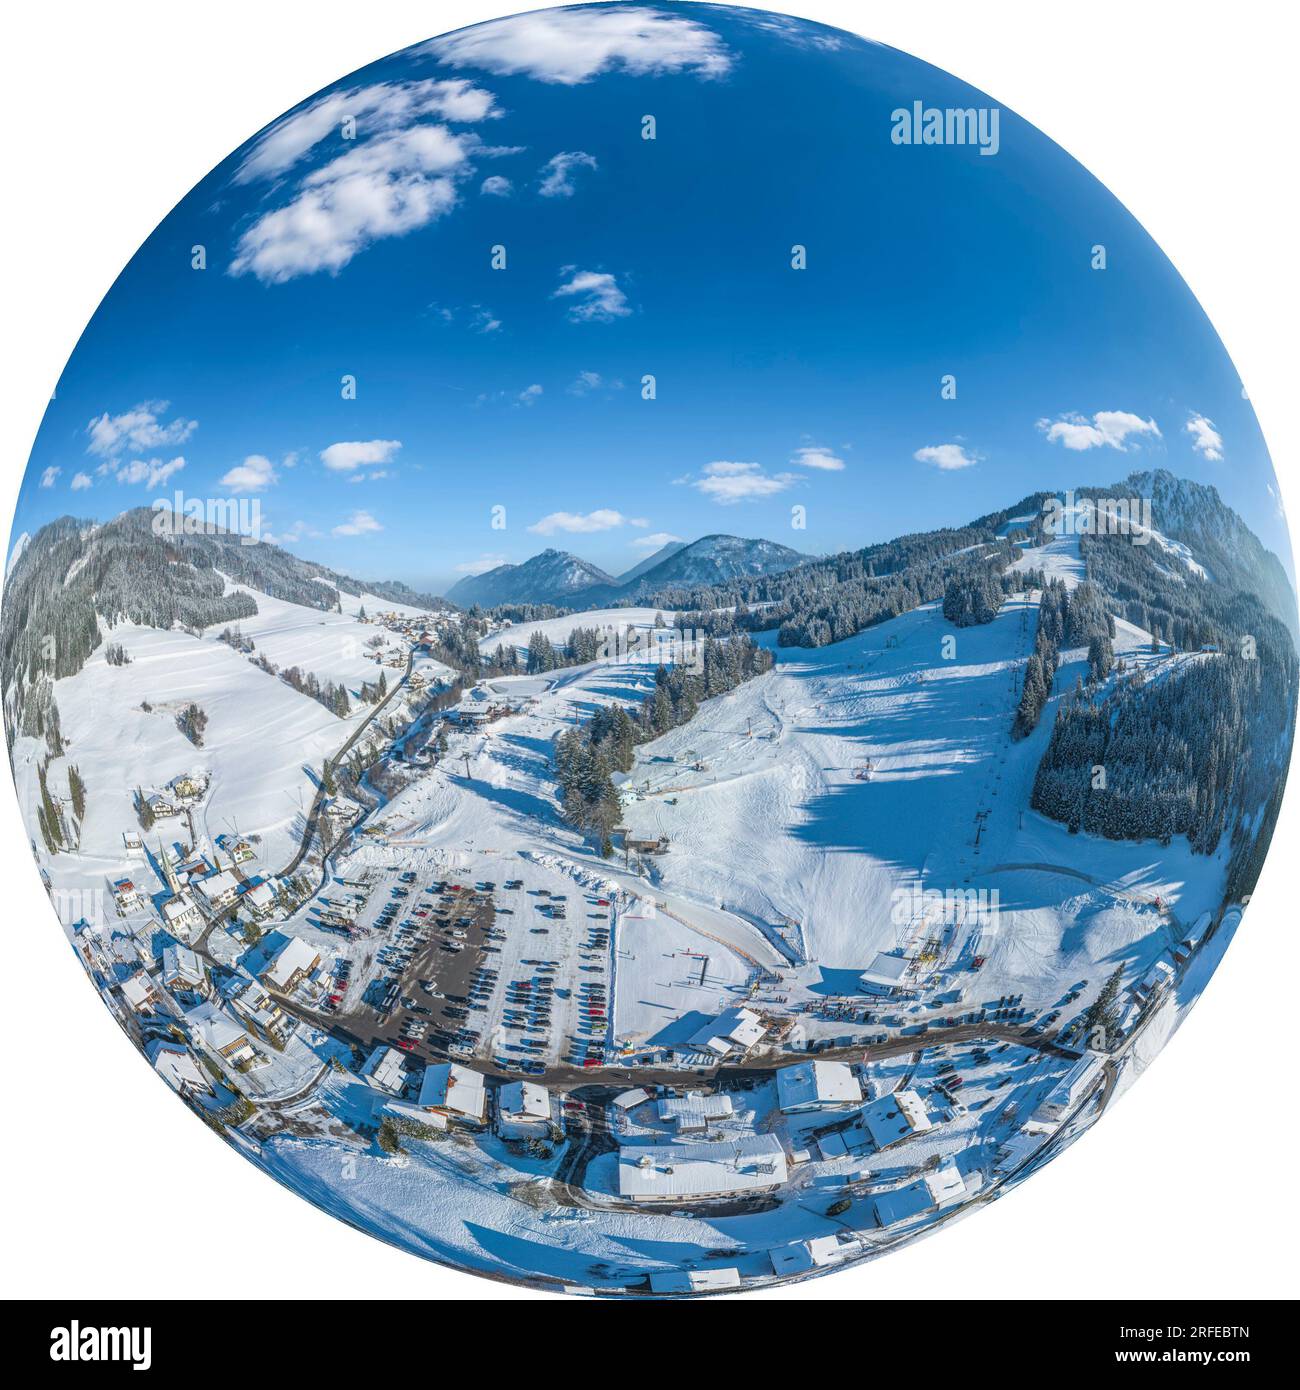 Das kleine Familien-Skigebiet Jungholz in den Allgäu-Alpen zeichnet sich im Winter durch garantierten Schnee und gute Erreichbarkeit aus. Stockfoto